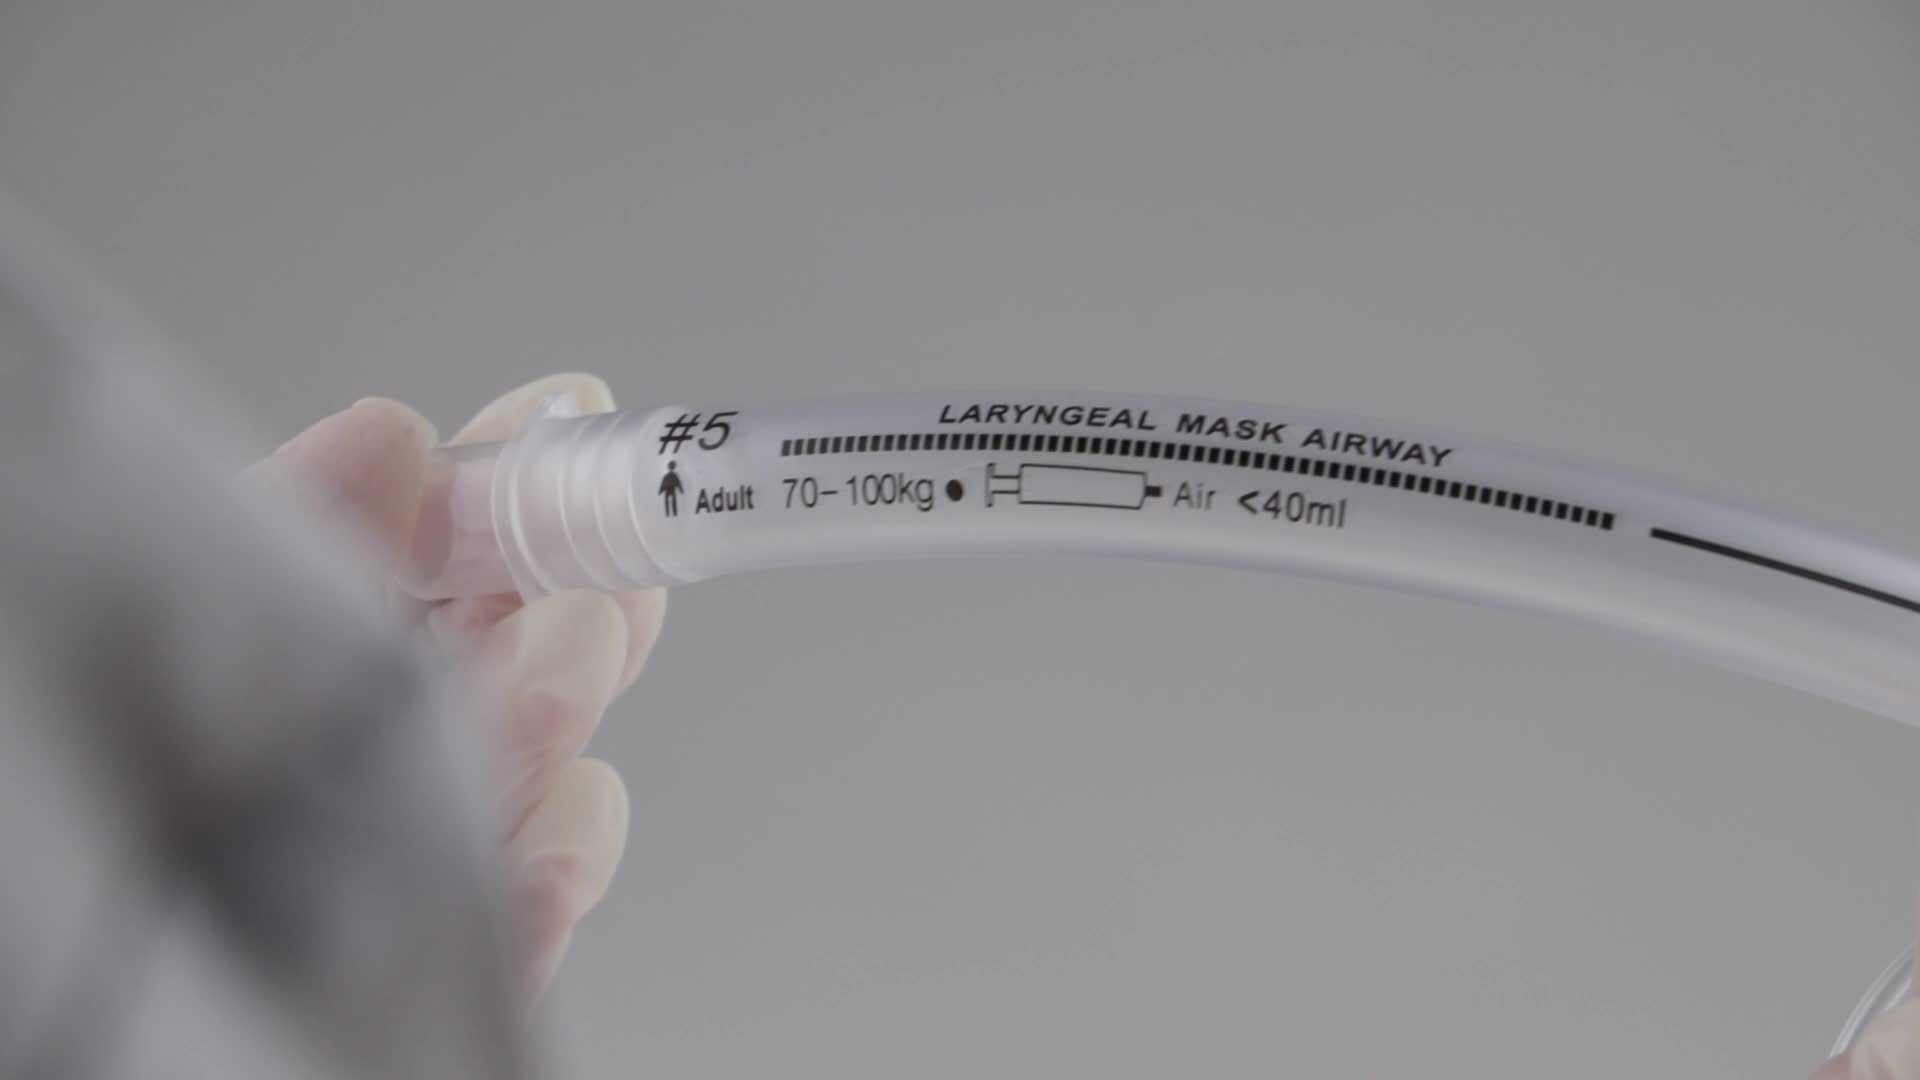 Medical Grade Laryngeal Mask Airway Single Gunakan Kualitas Baik Silicone Laryngeal Mask1